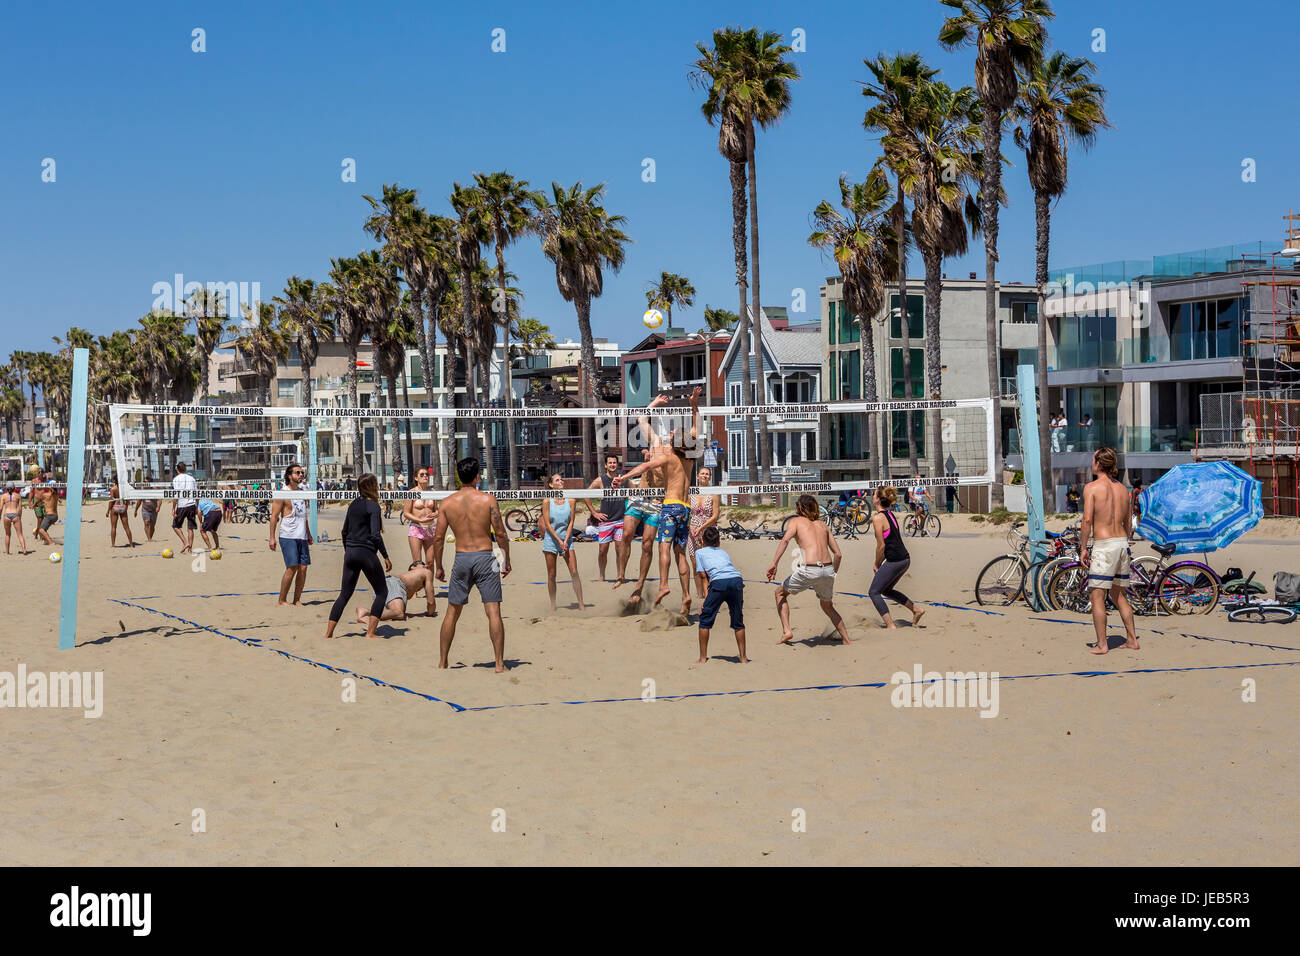 Les gens, les joueurs de volley-ball, jouer au beach-volley, beach volley-ball, beach-volley, Venice Beach, Venice, Los Angeles, Californie Banque D'Images